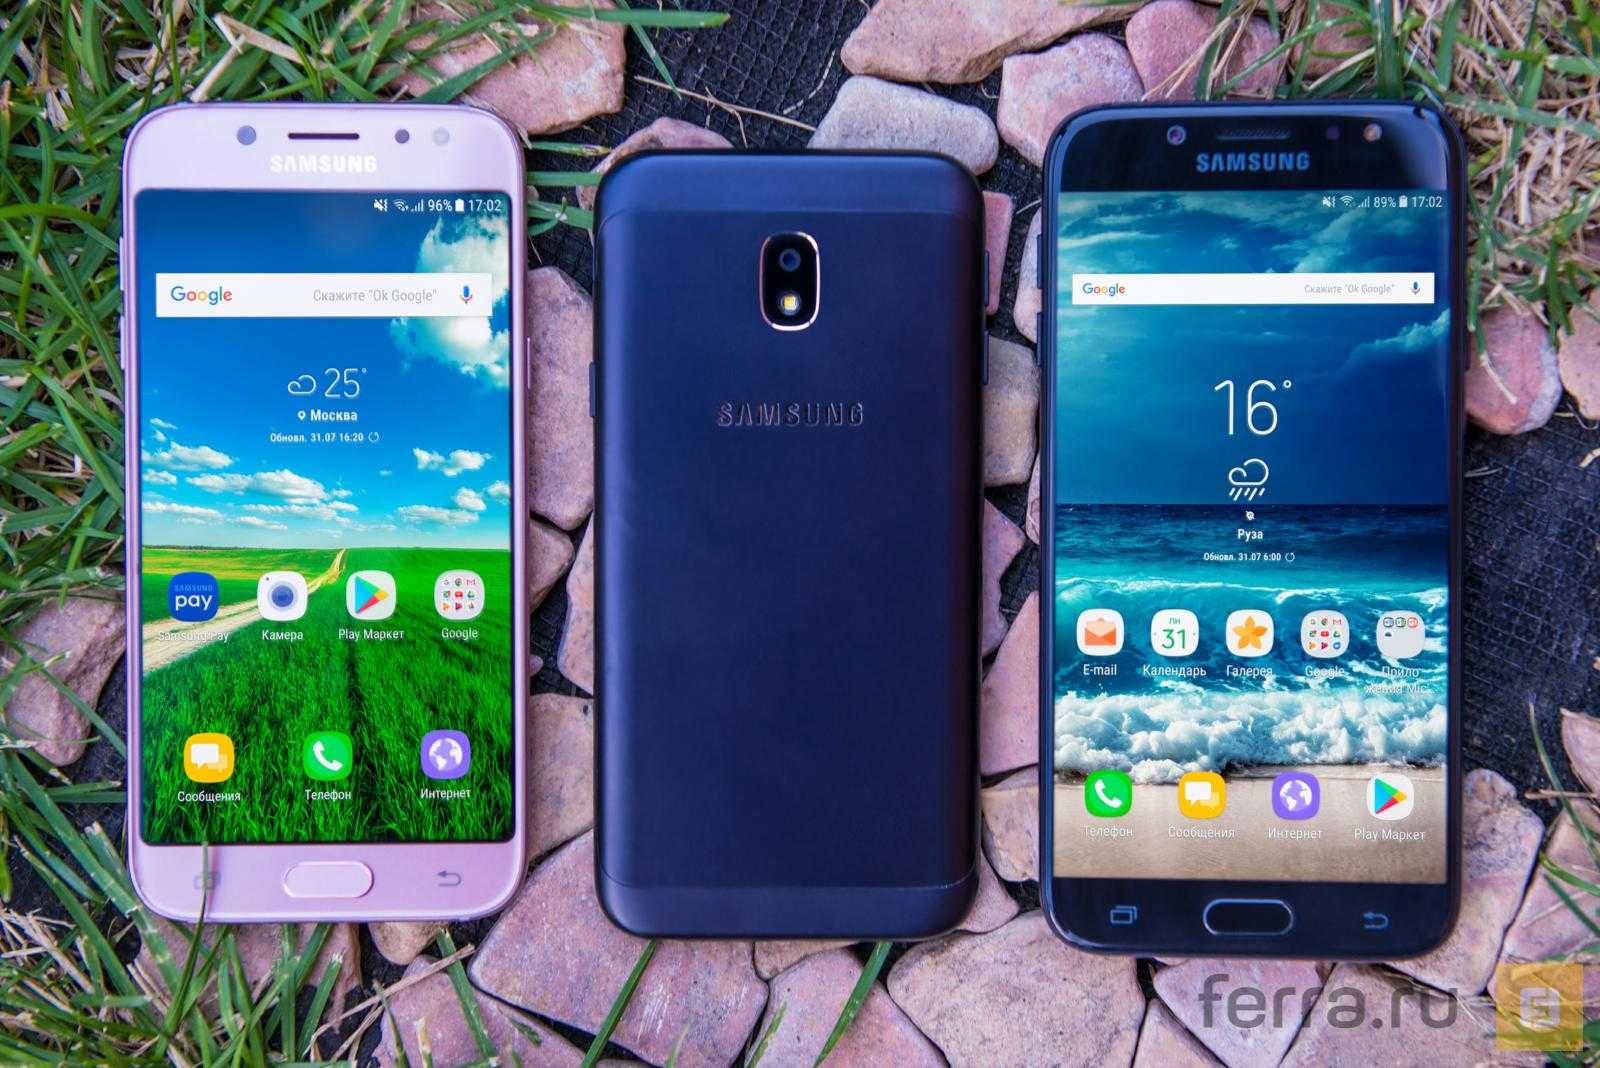 Южнокорейский чеболь Samsung давно и успешно производит смартфоны. У компании сложилась армия поклонников, готовых отстаивать свою любимую марку и переплачивать за логотип.